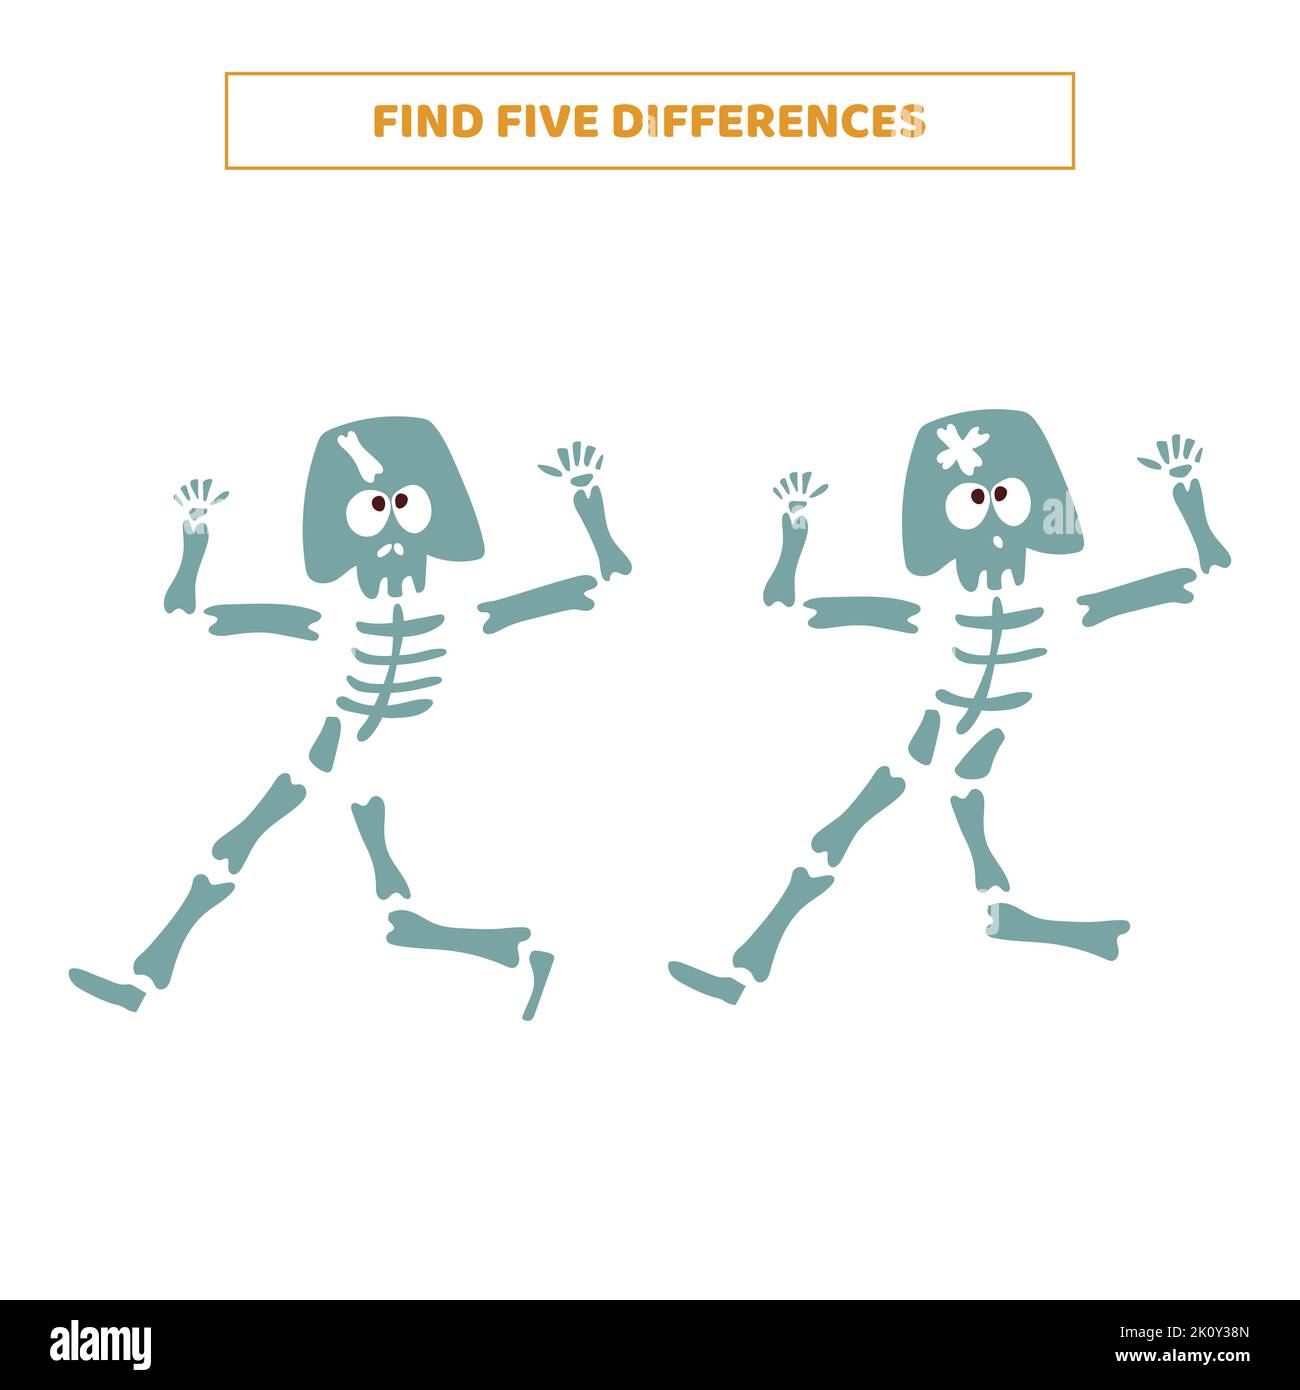 Finden Sie fünf Unterschiede zwischen Cartoon-Skelette. Lernspiel für Kinder. Stock Vektor